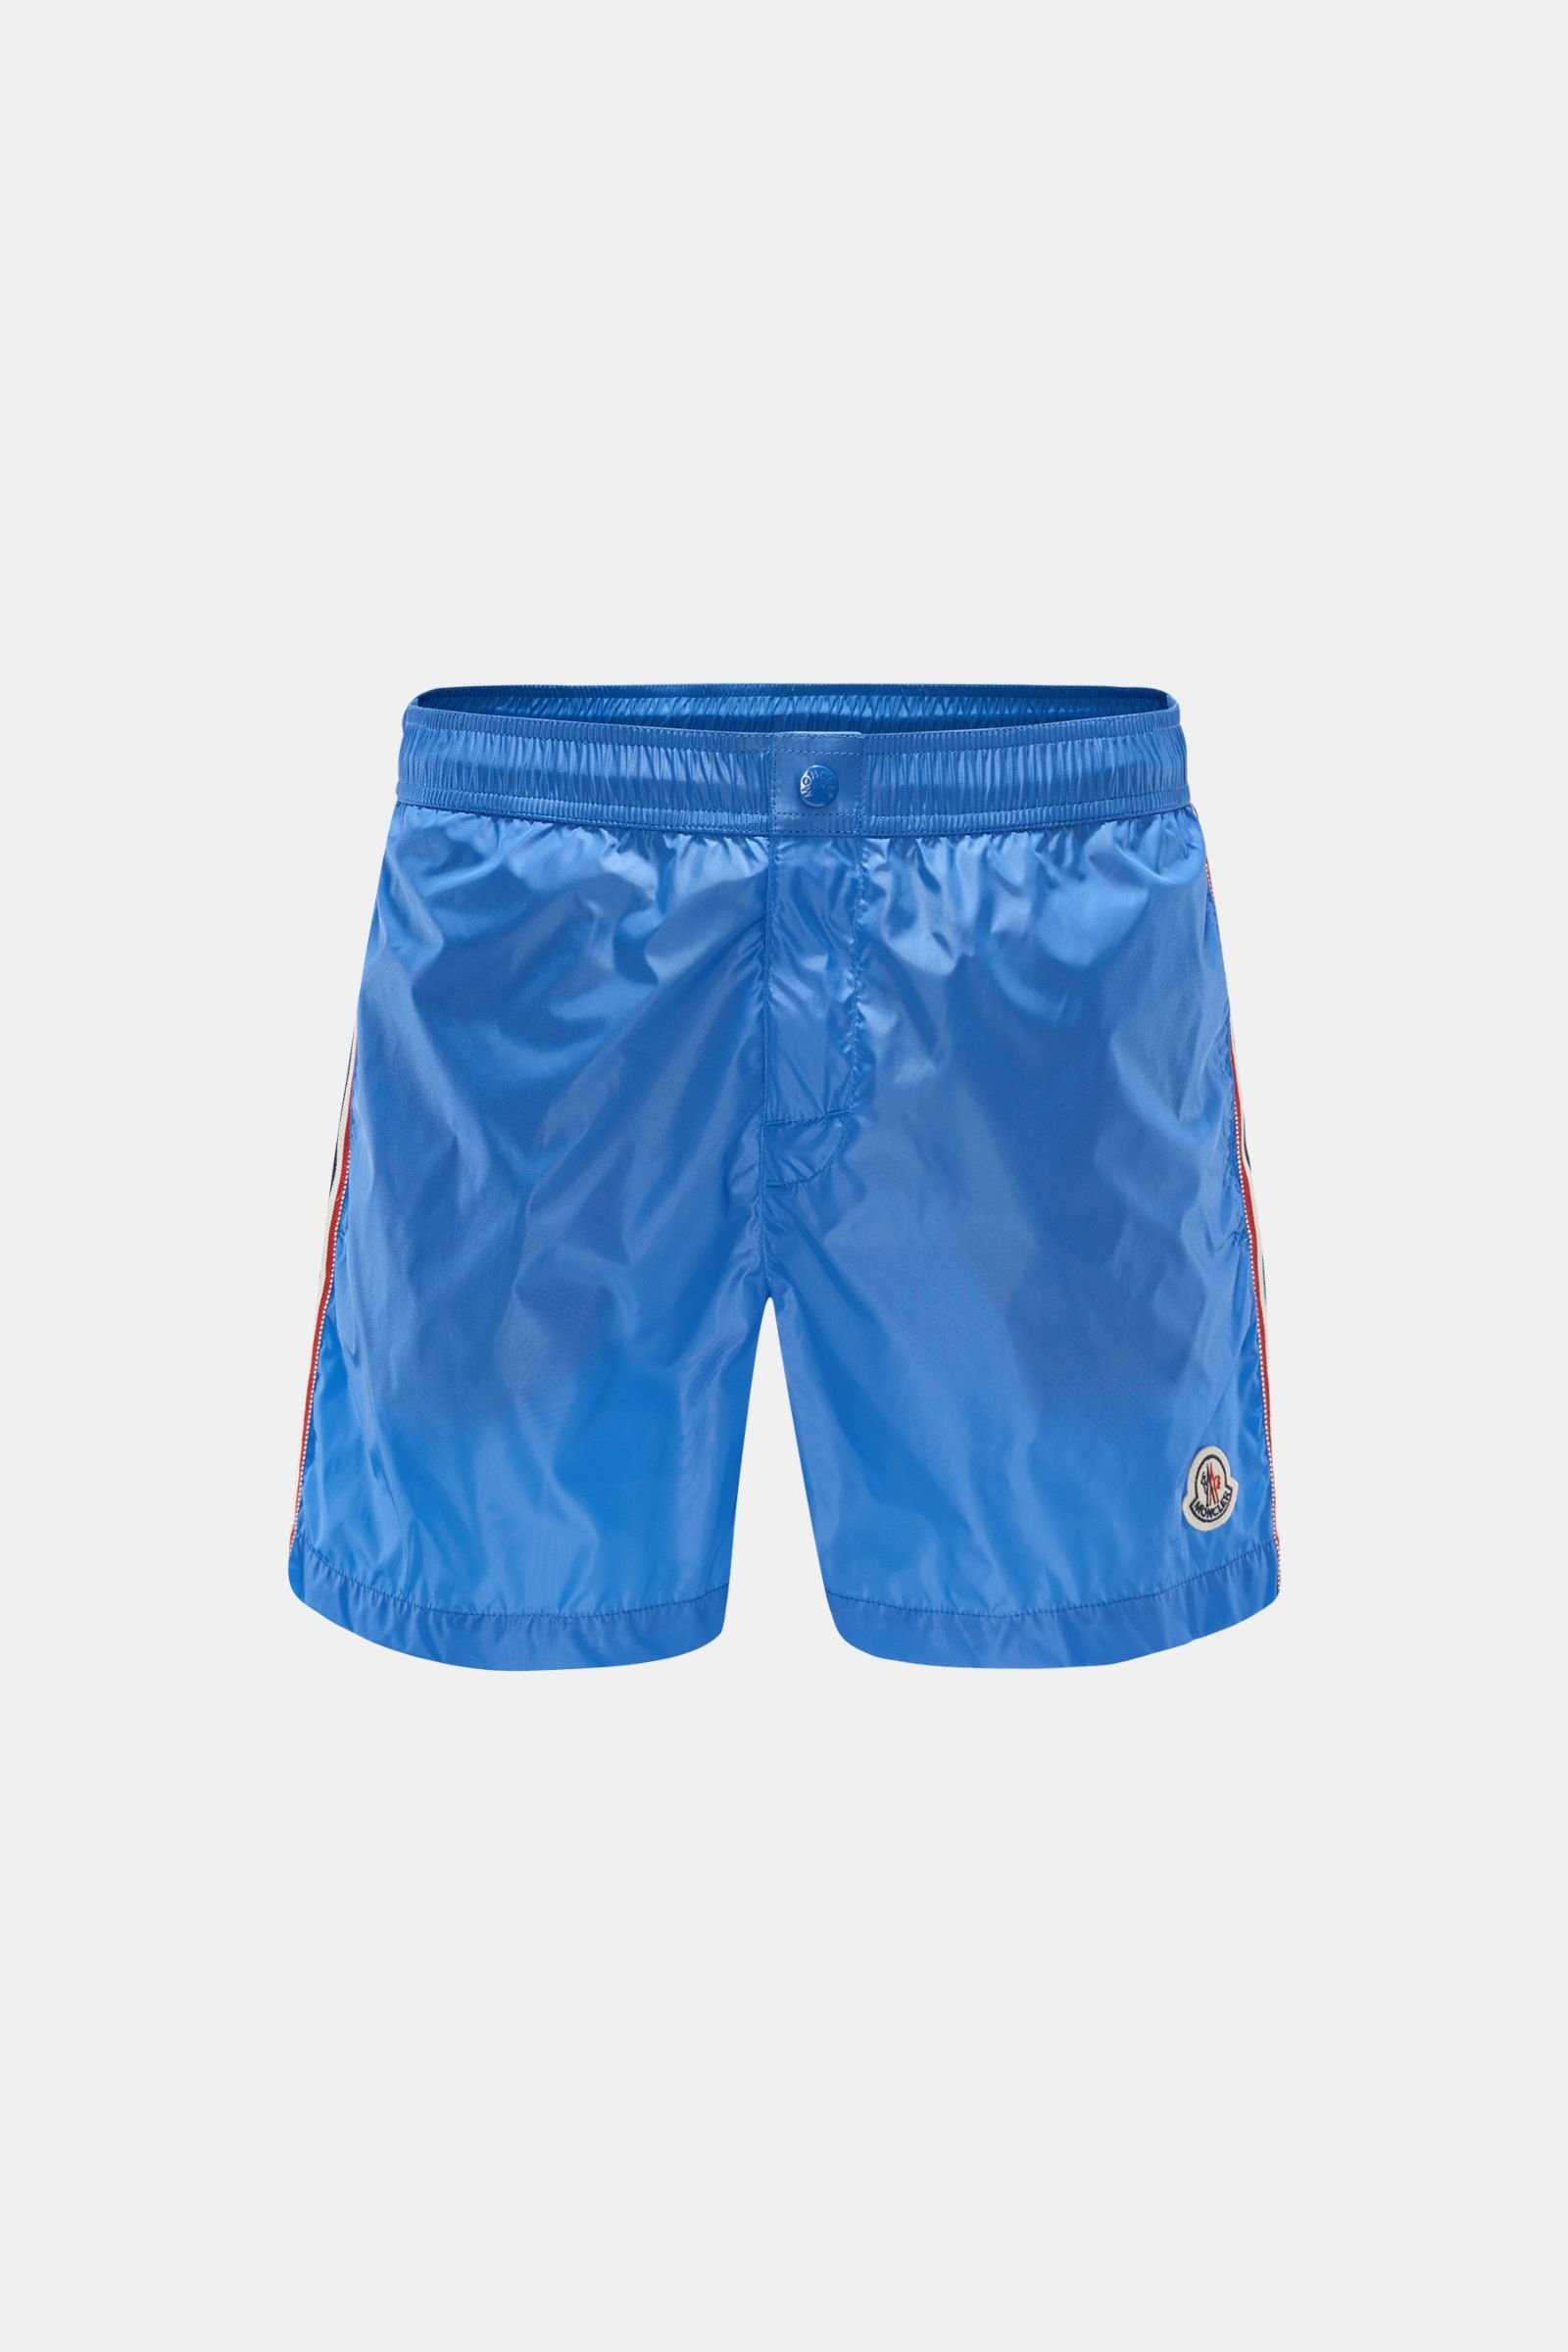 Swim shorts azure